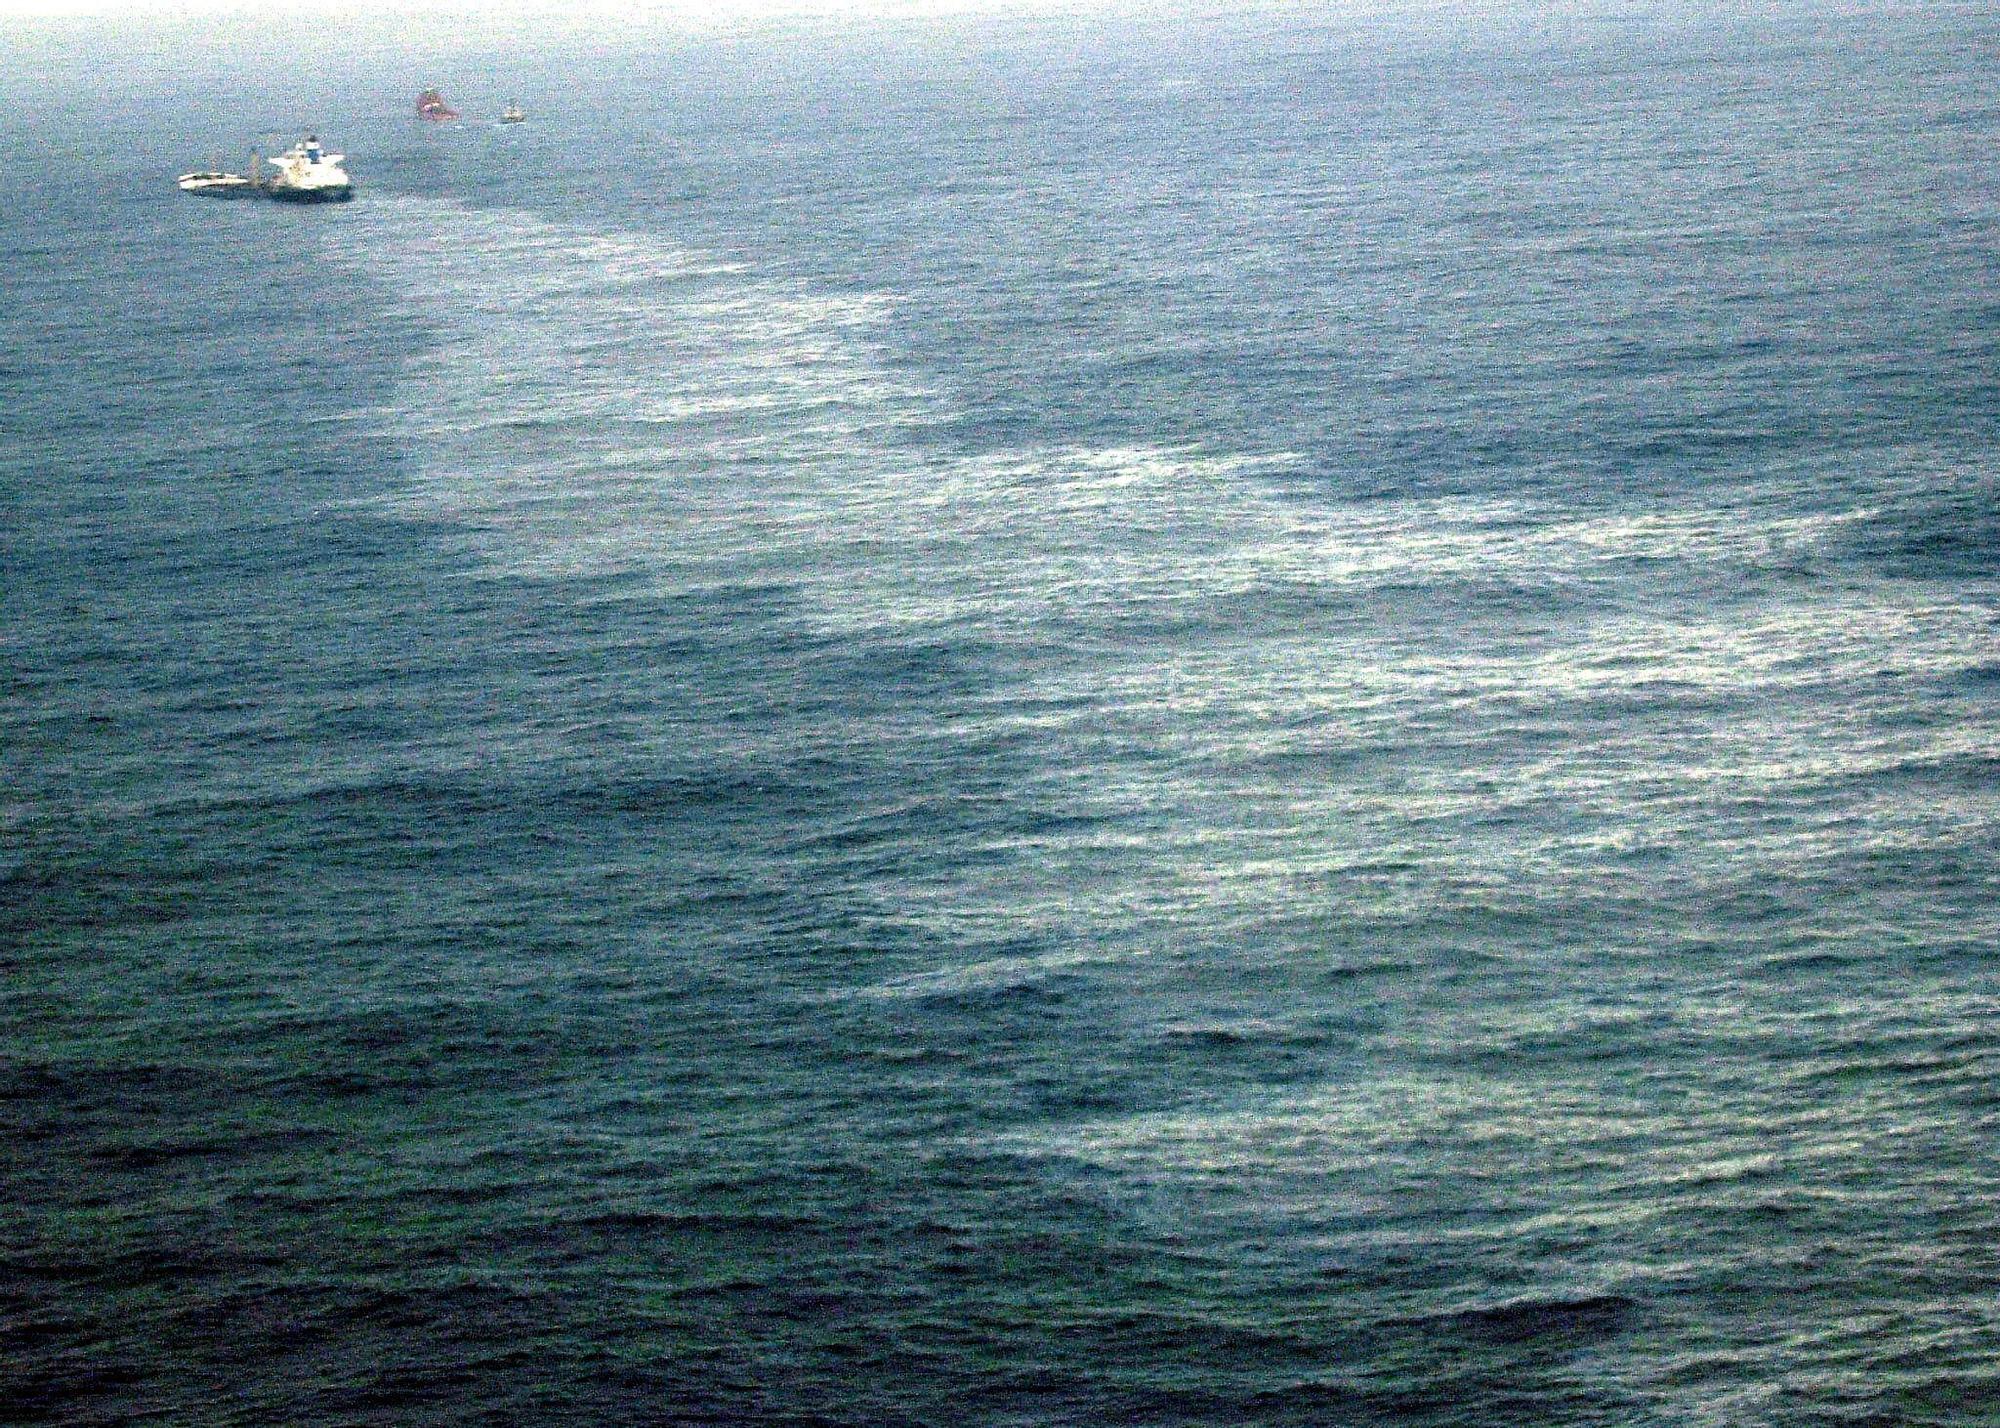 El petrolero Prestige cuando estaba siendo remolcado a escasas millas de la costa gallega antes de hunidrse en 2002 Lavandeira Jr (3).jpg